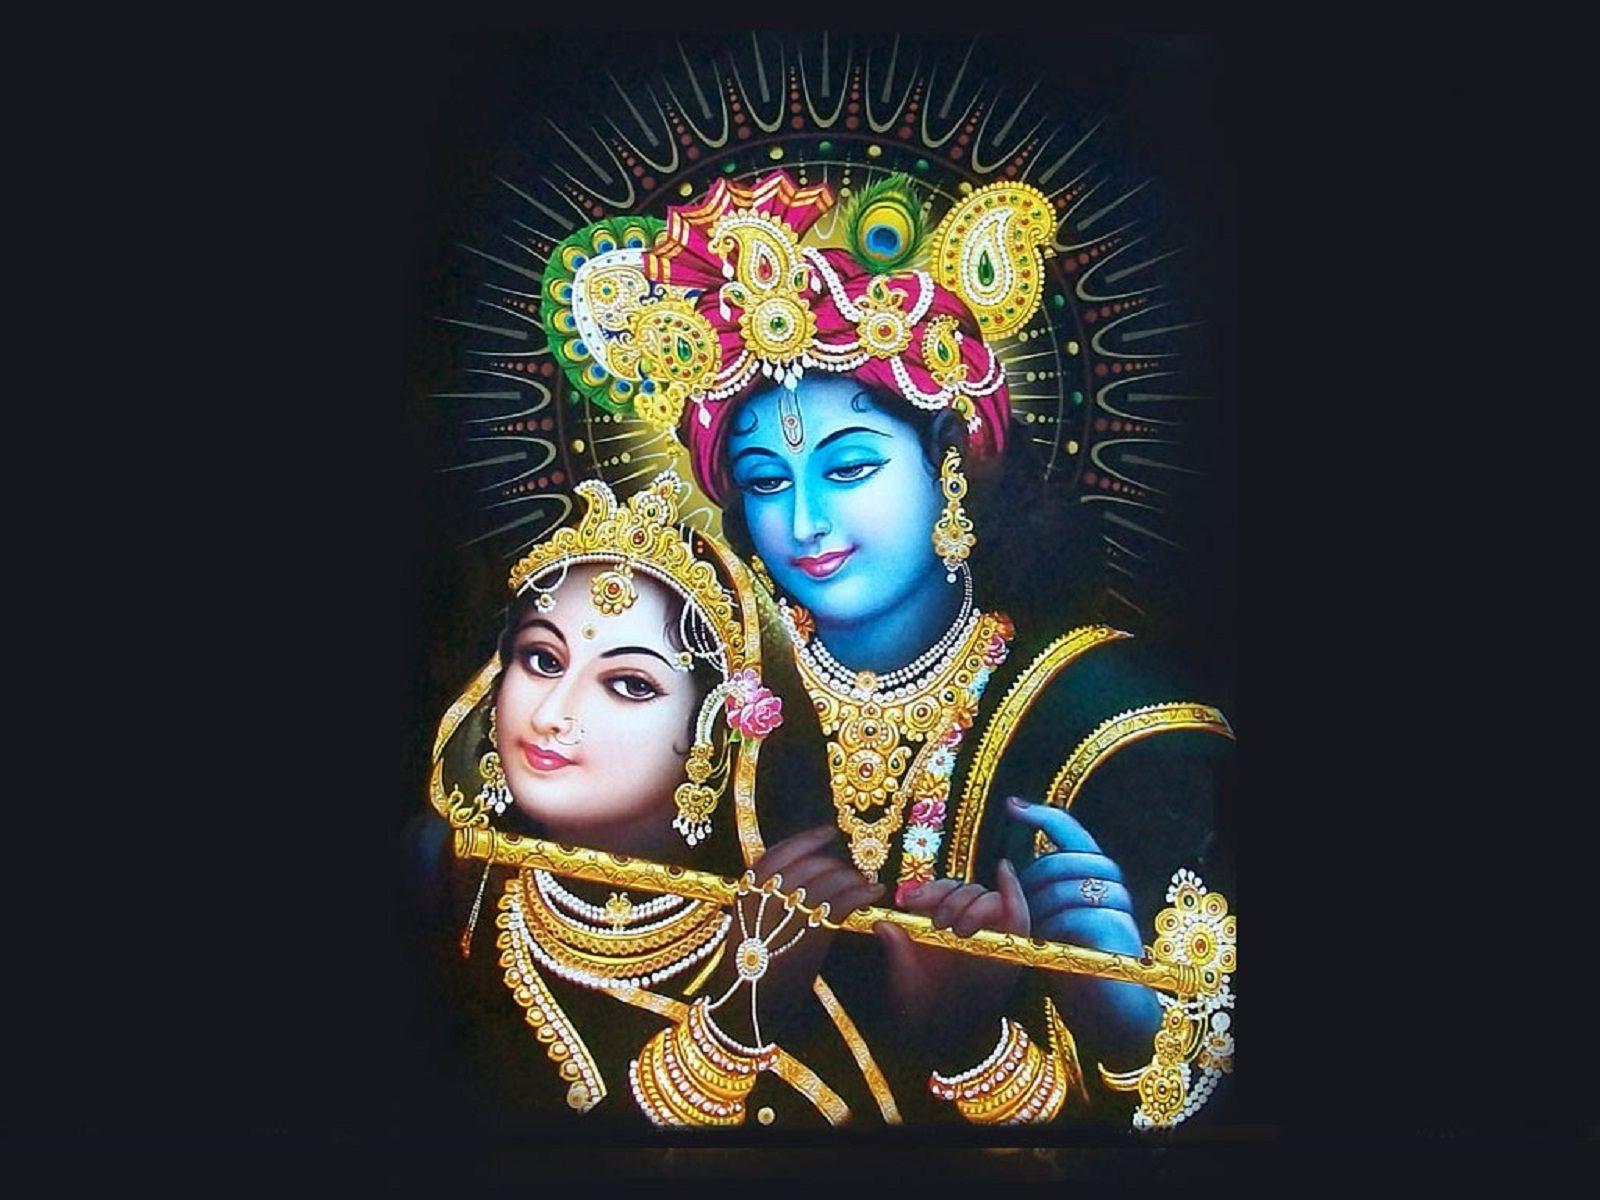 Download Free HD Wallpaper & Image of Bhagwan Shri Krishna. Shree